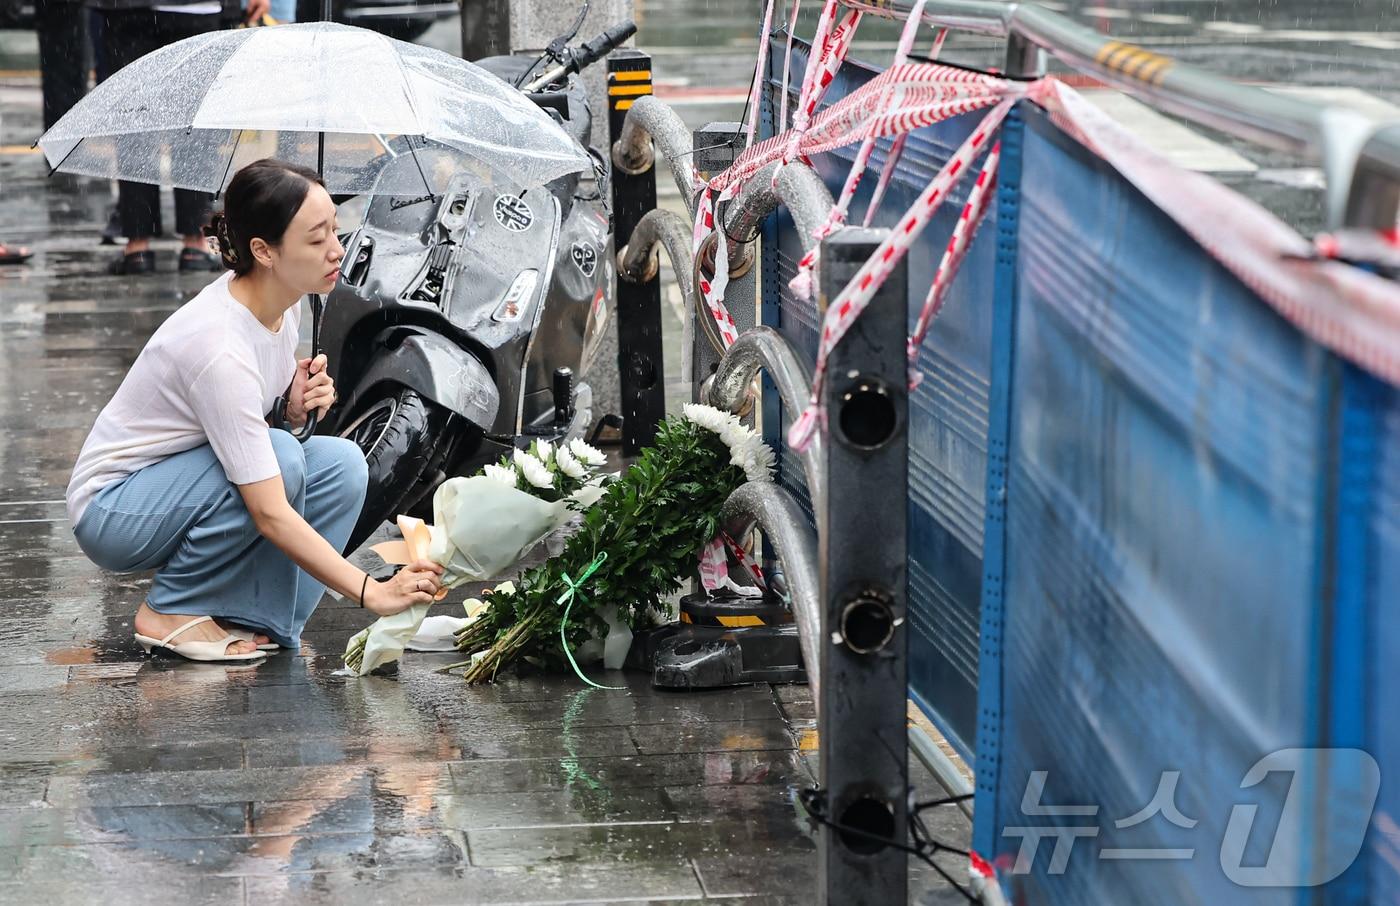 지난밤 승용차가 인도로 돌진해 9명이 사망하는 사고가 발생한 2일 오전 서울 중구 서울시청 인근 교차로 사고현장에서 한 시민이 희생자를 추모하며 헌화를 하고 있다. 이번 사고로 9명이 사망하고 4명&#40;중상 1명·경상 3명&#41;이 다쳤다. 사망자 9명 중 6명은 현장에서 사망했으며, 3명은 병원 이송 도중 숨졌다. 2024.7.2/뉴스1 ⓒ News1 김도우 기자